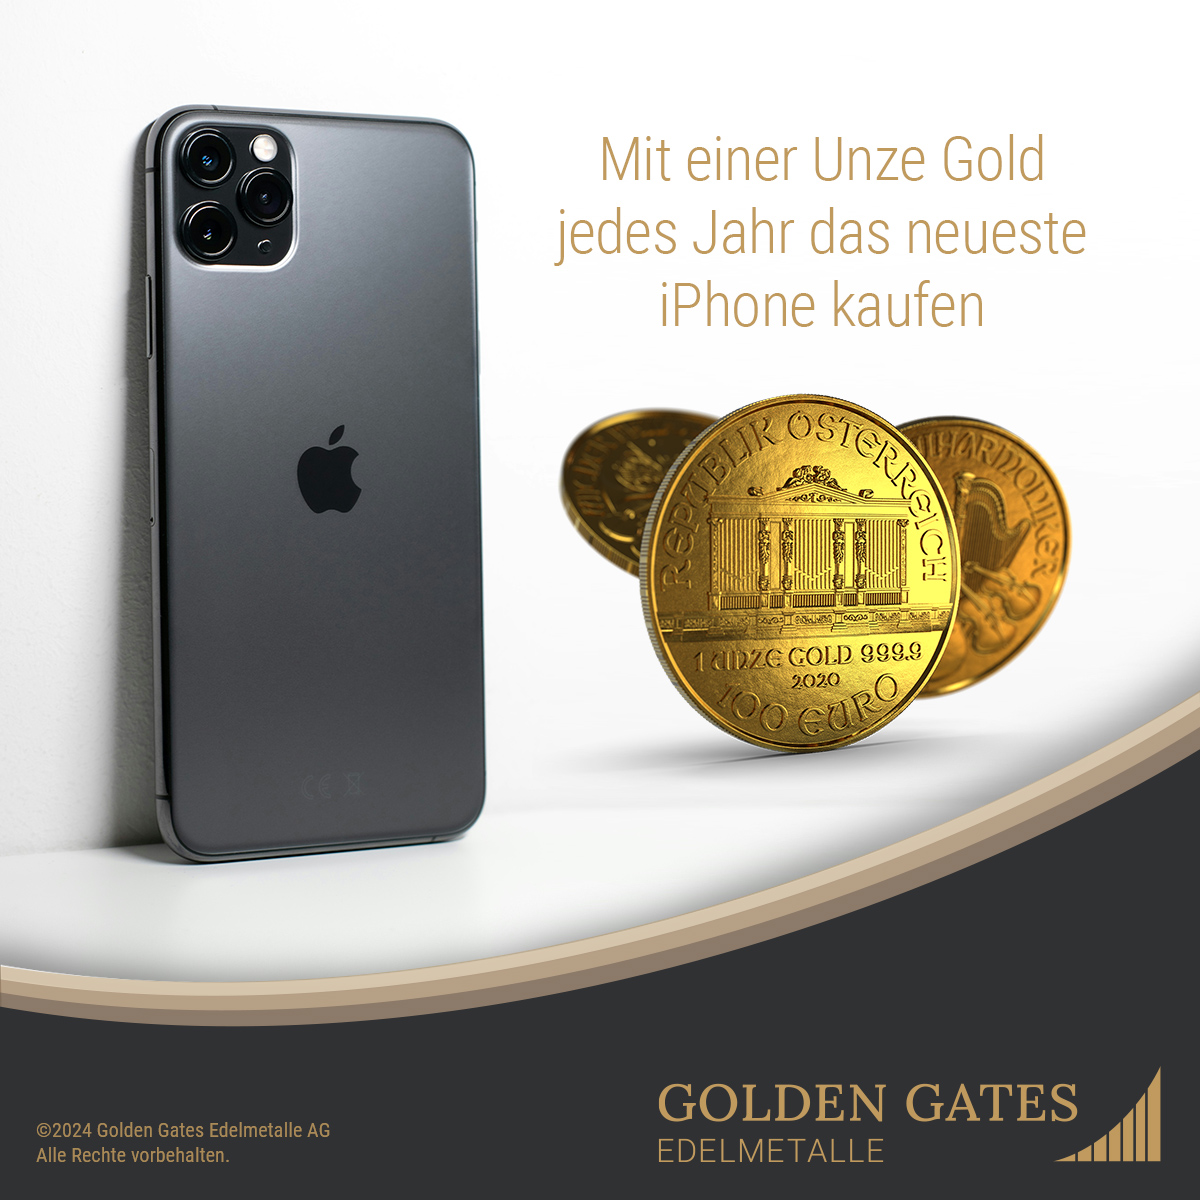 Planen Sie ein neues #iPhone zu kaufen? 📱Vergleichen Sie die Preise mit denen vor 15 Jahren - fast doppelt so hoch! 😮 Sie werden feststellen, dass Sie mit einer Unze Gold jedes Jahr das neueste iPhone hätten kaufen können. Das ist Kaufkrafterhalt! 💰#Kaufkraft #GoldInvestment